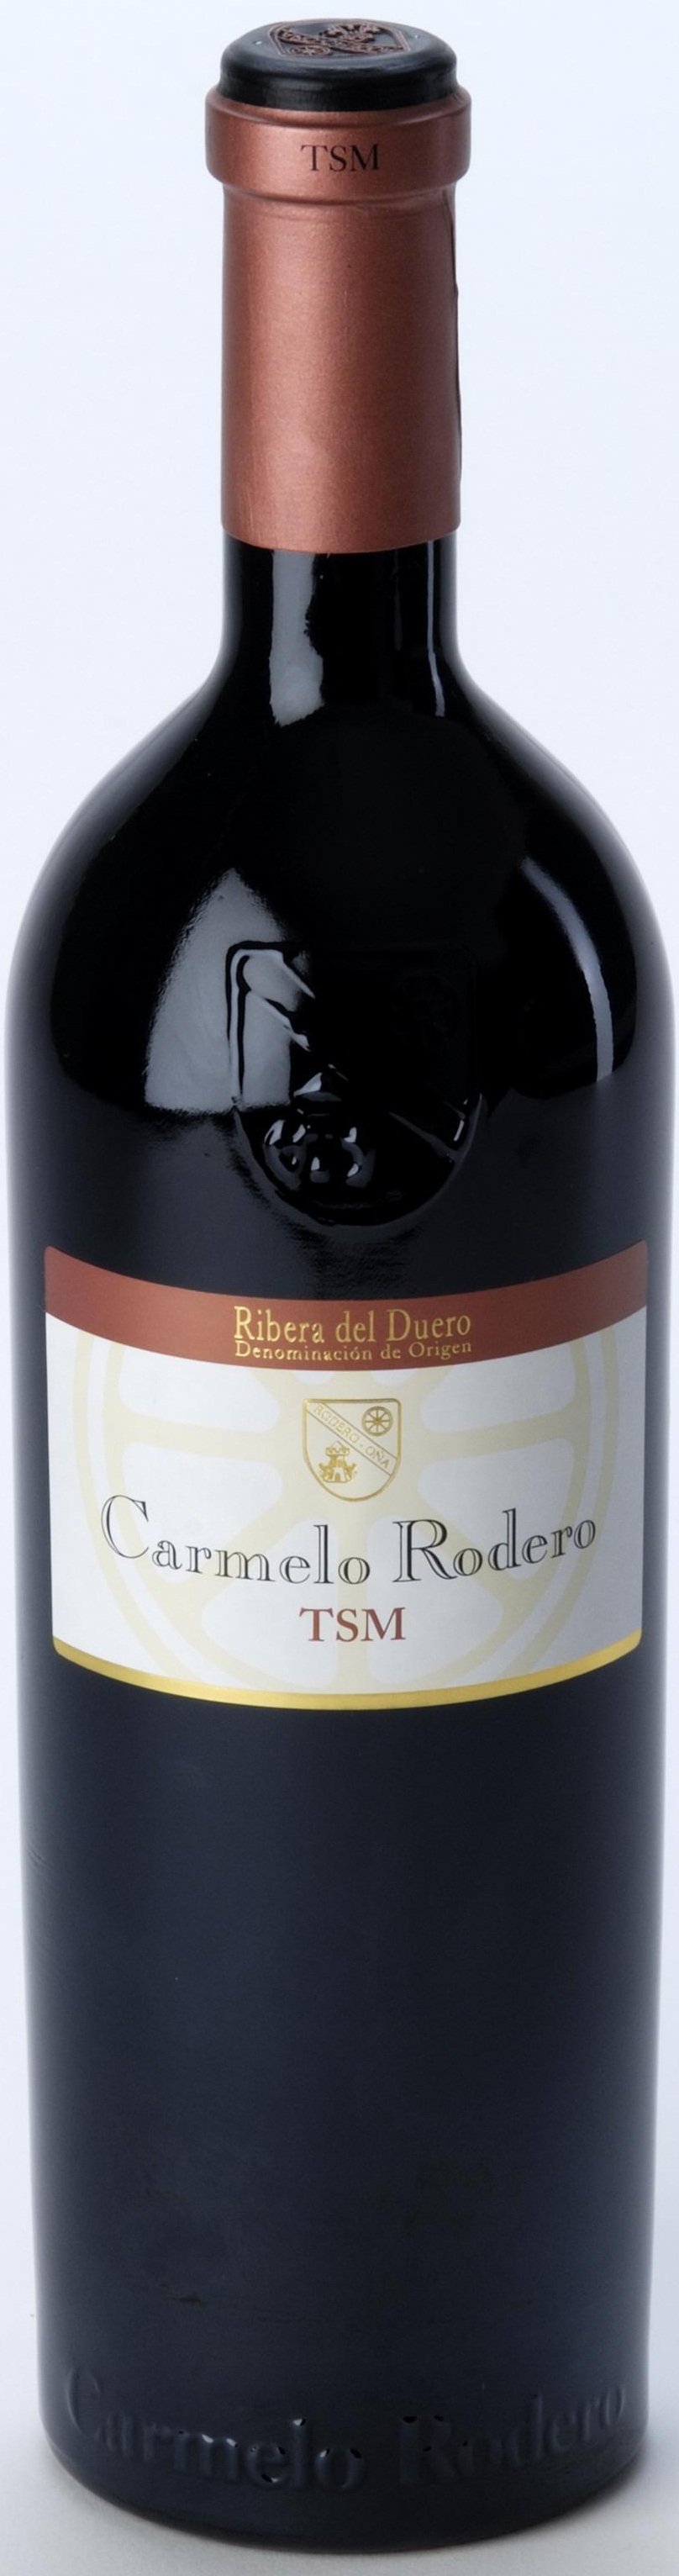 Imagen de la botella de Vino Carmelo Rodero TSM